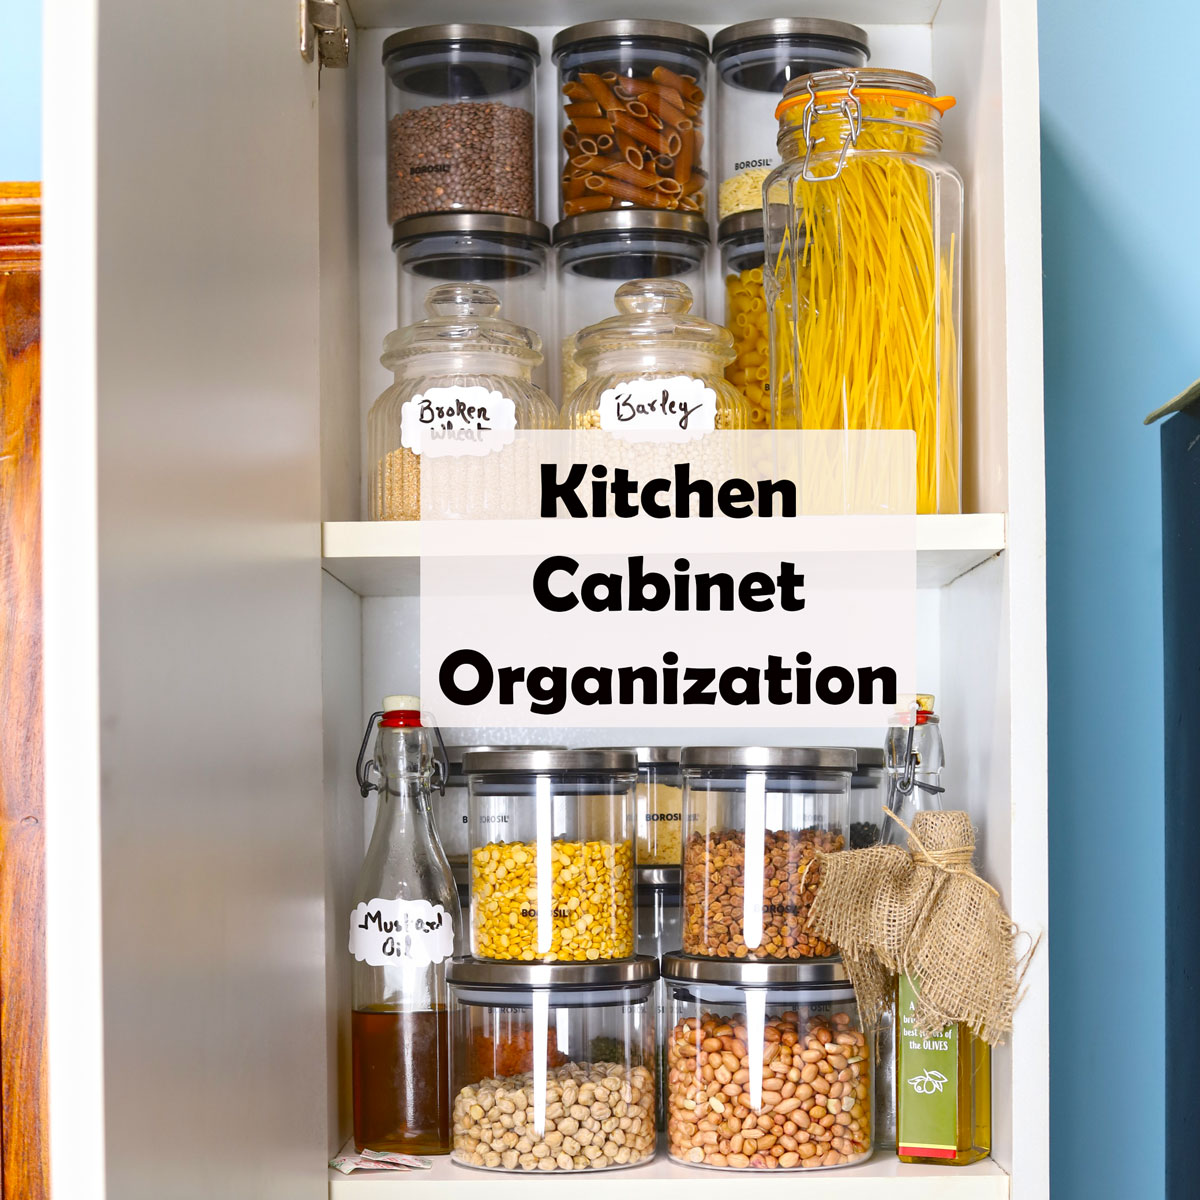 Kitchen Cabinet Organization Ideas For Indian Kitchen   Fun FOOD ...